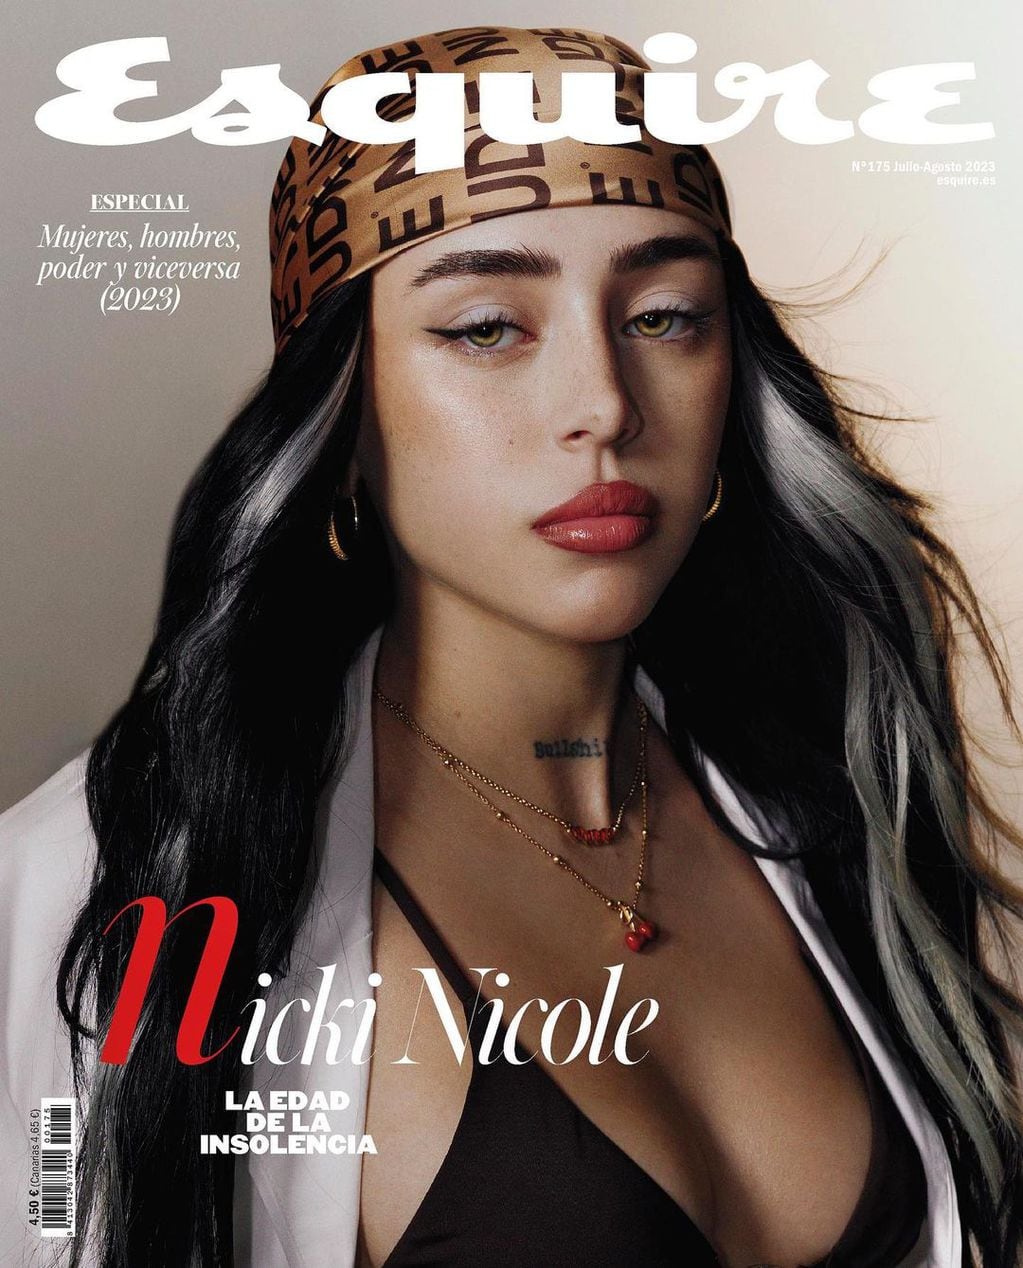 Nicki Nicole tapa de la revista Esquire. Fuente: Instagram @esquirees